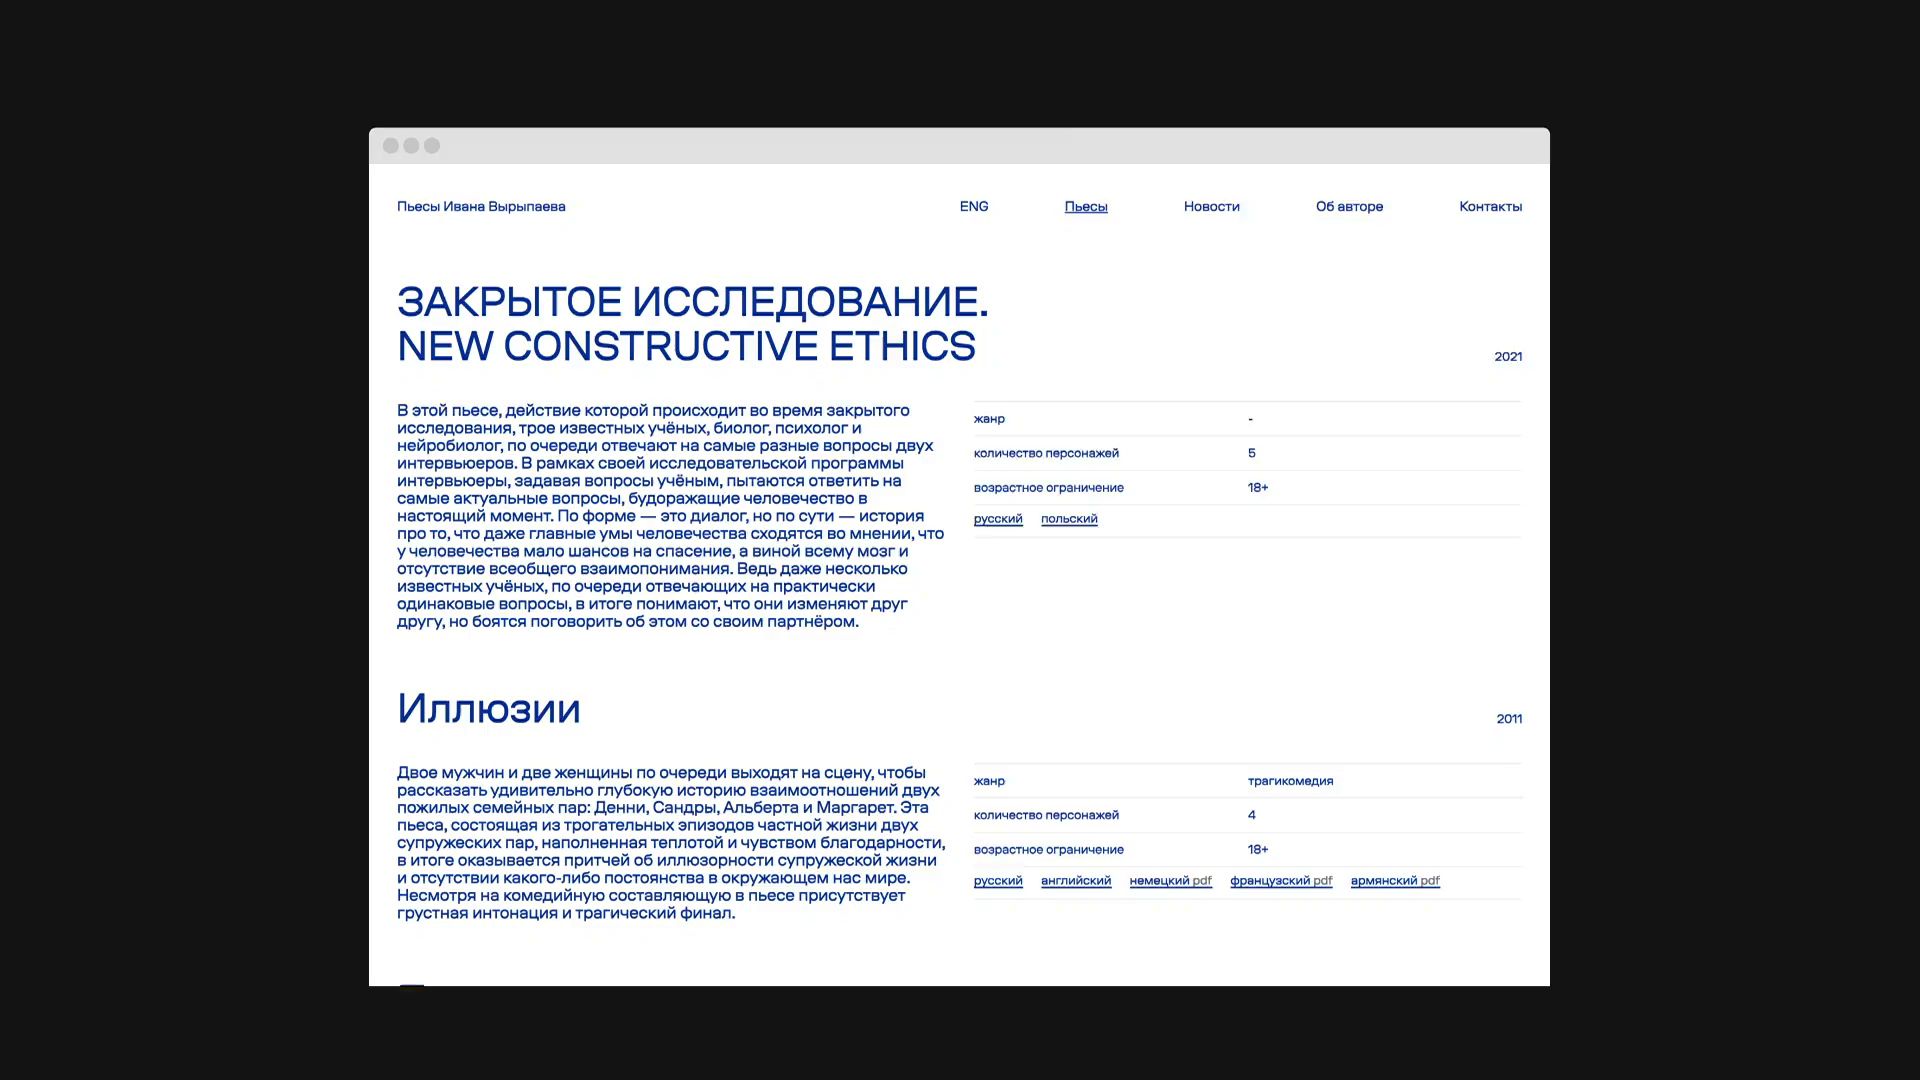 Ivan Vyrypaev's website